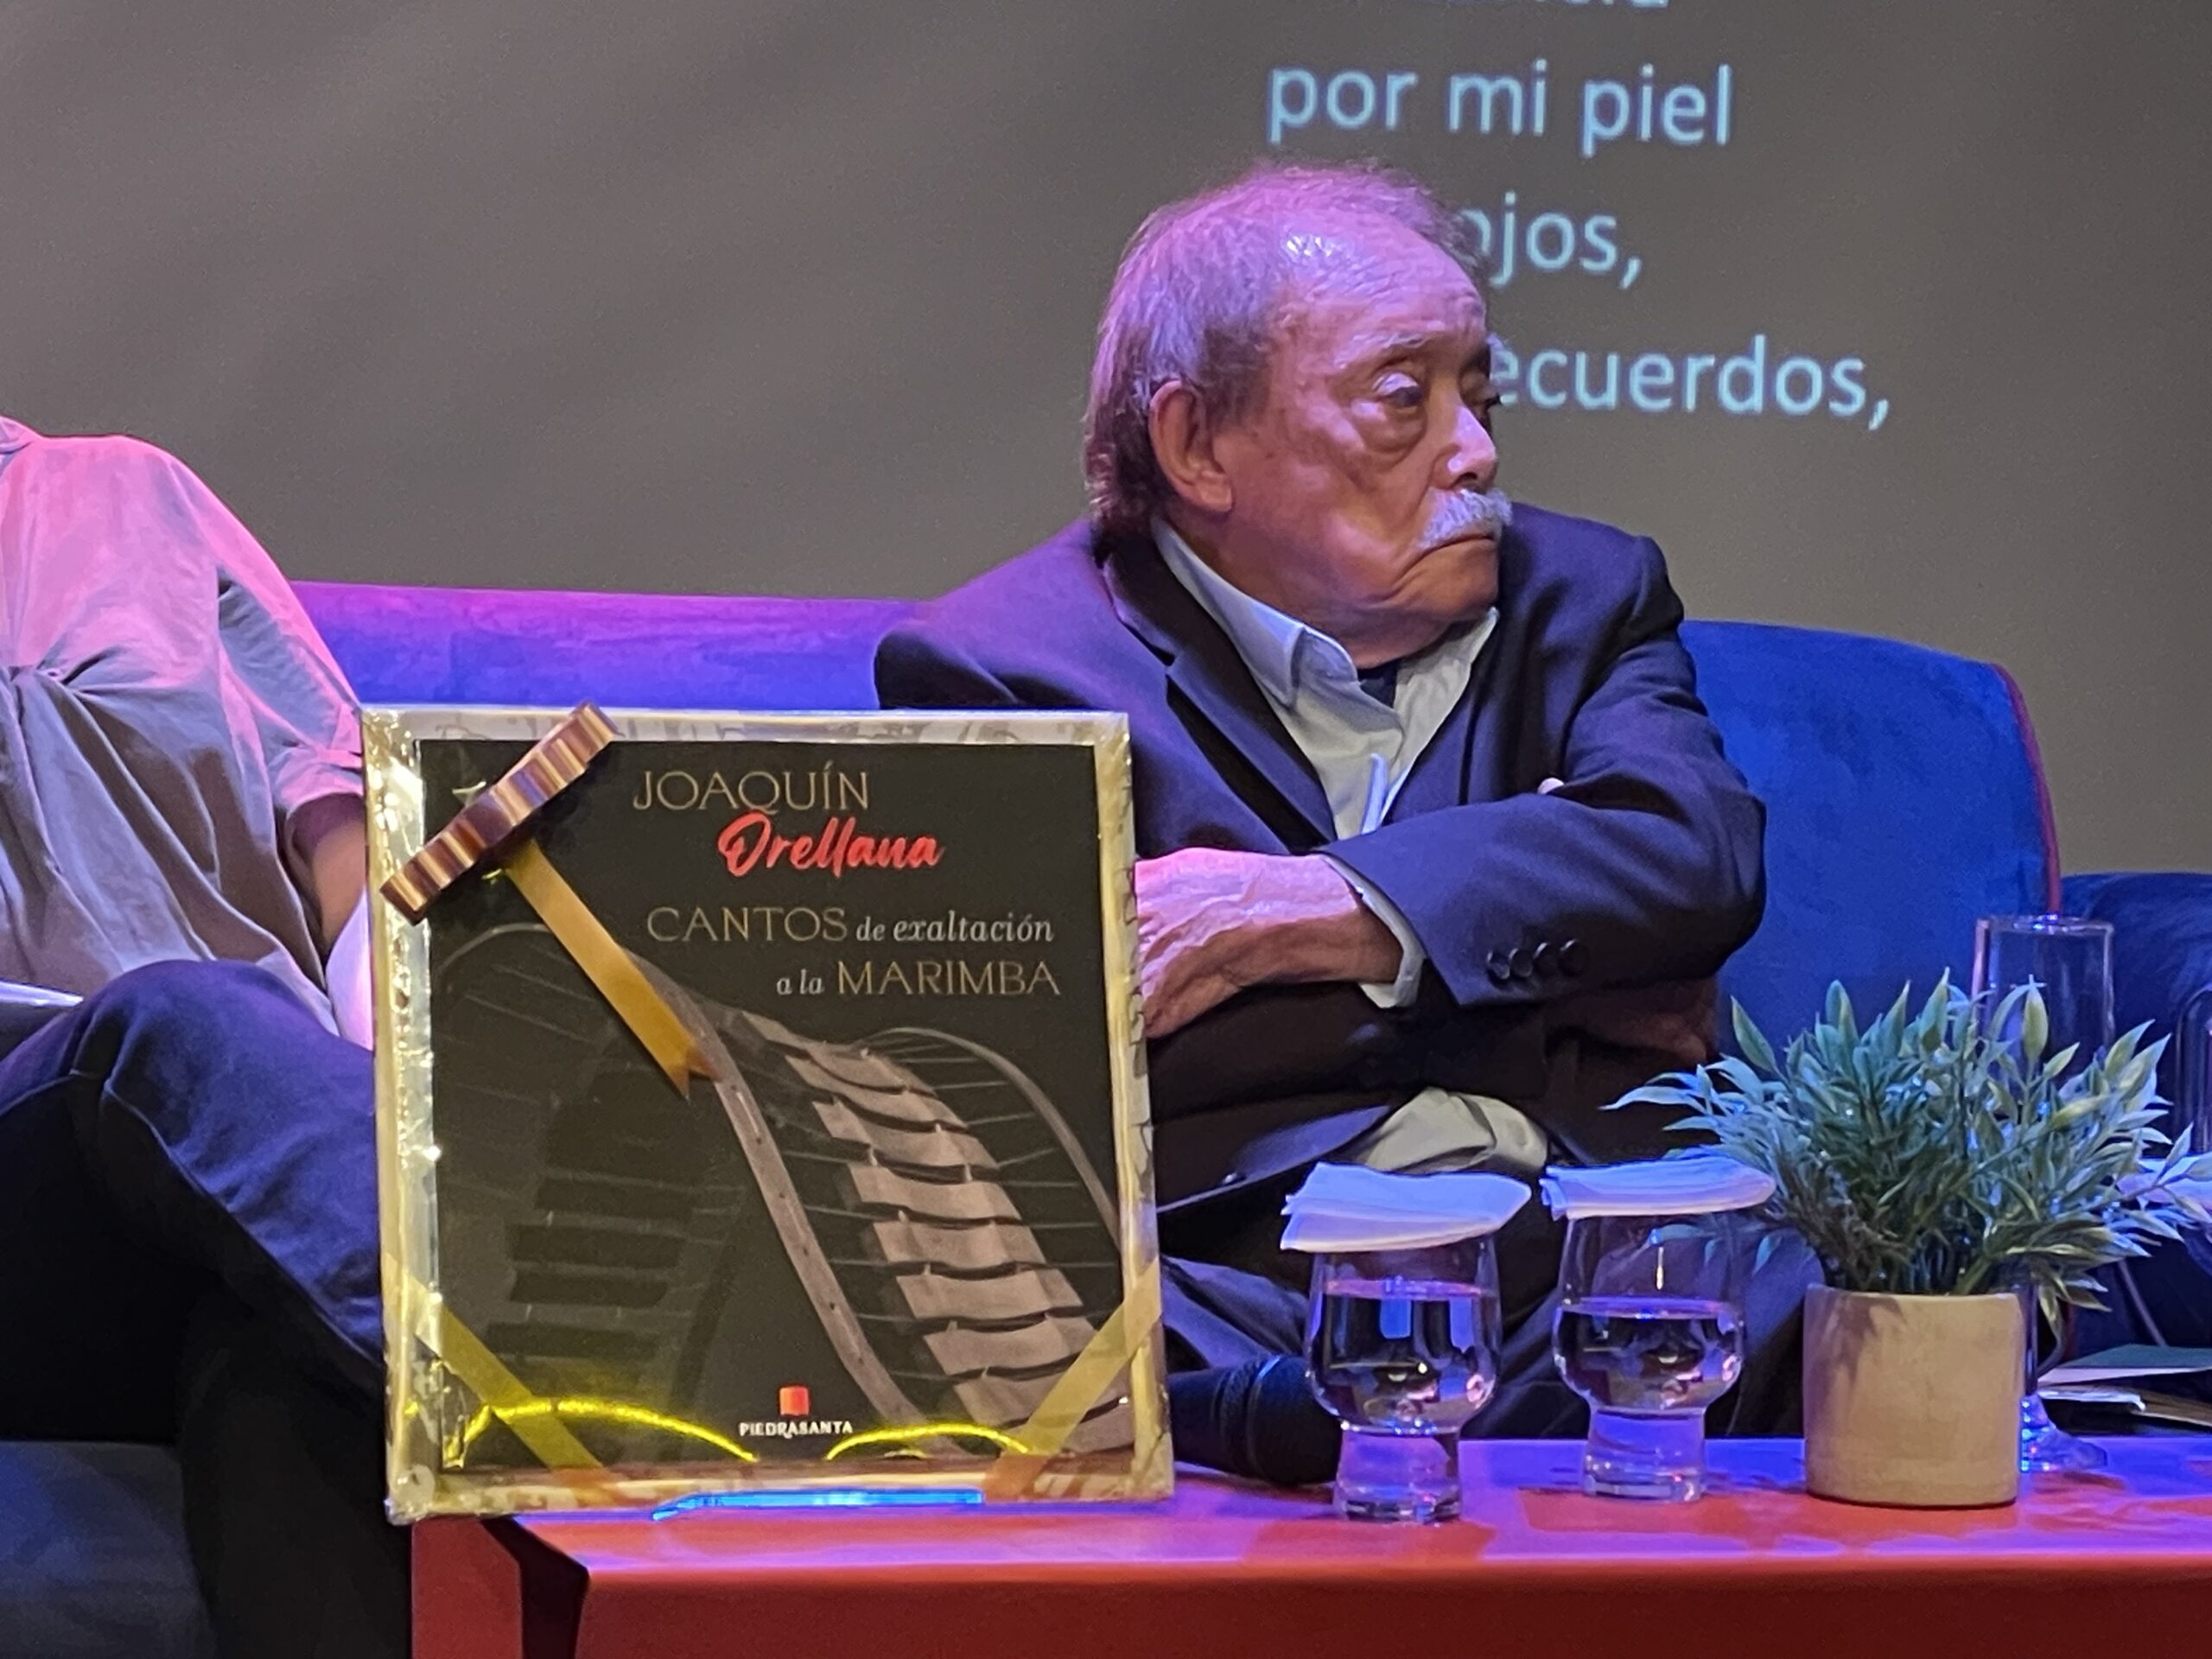 Nueva Edición “Cantos de exaltación a la marimba”, el legado musical de Joaquín Orellana